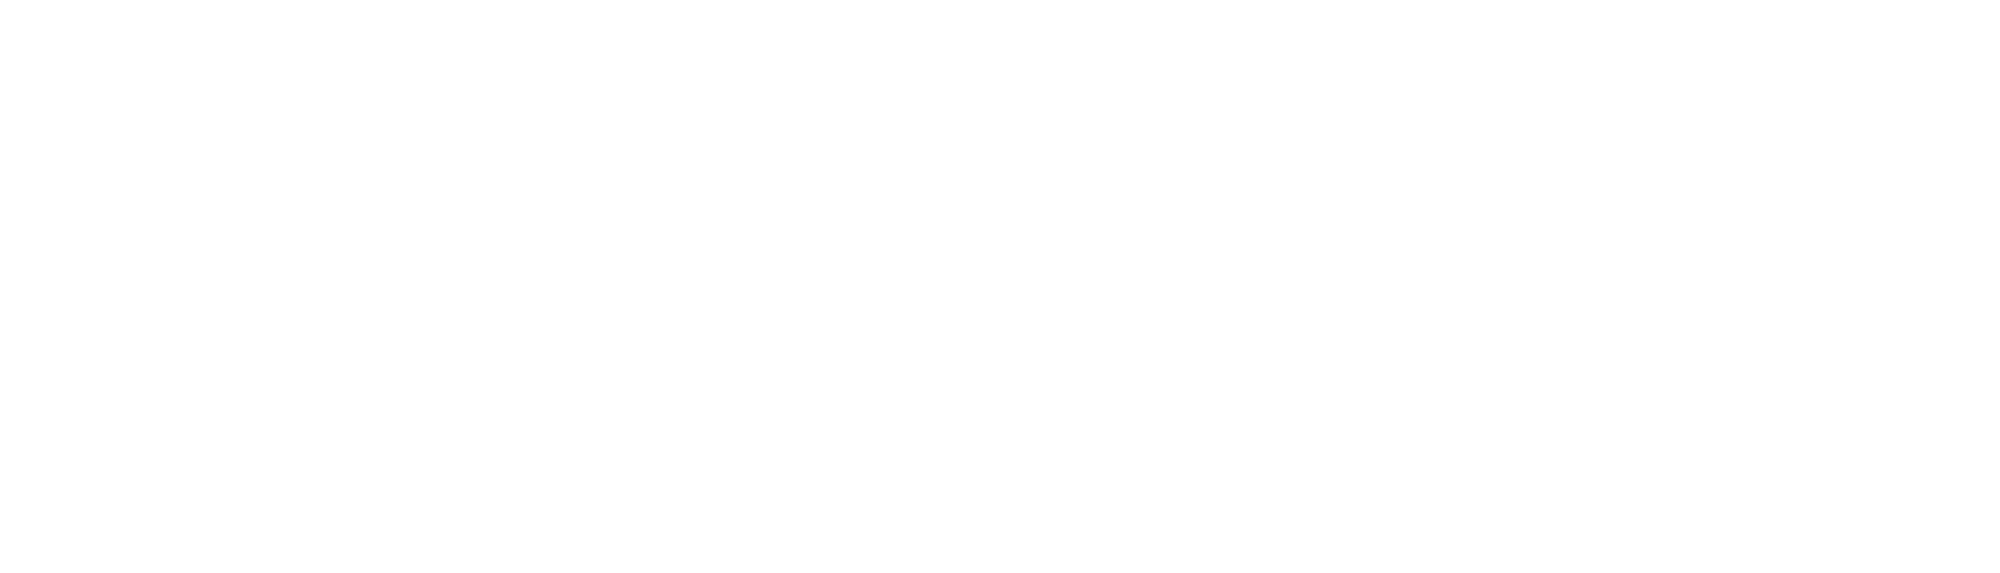 MyDocu